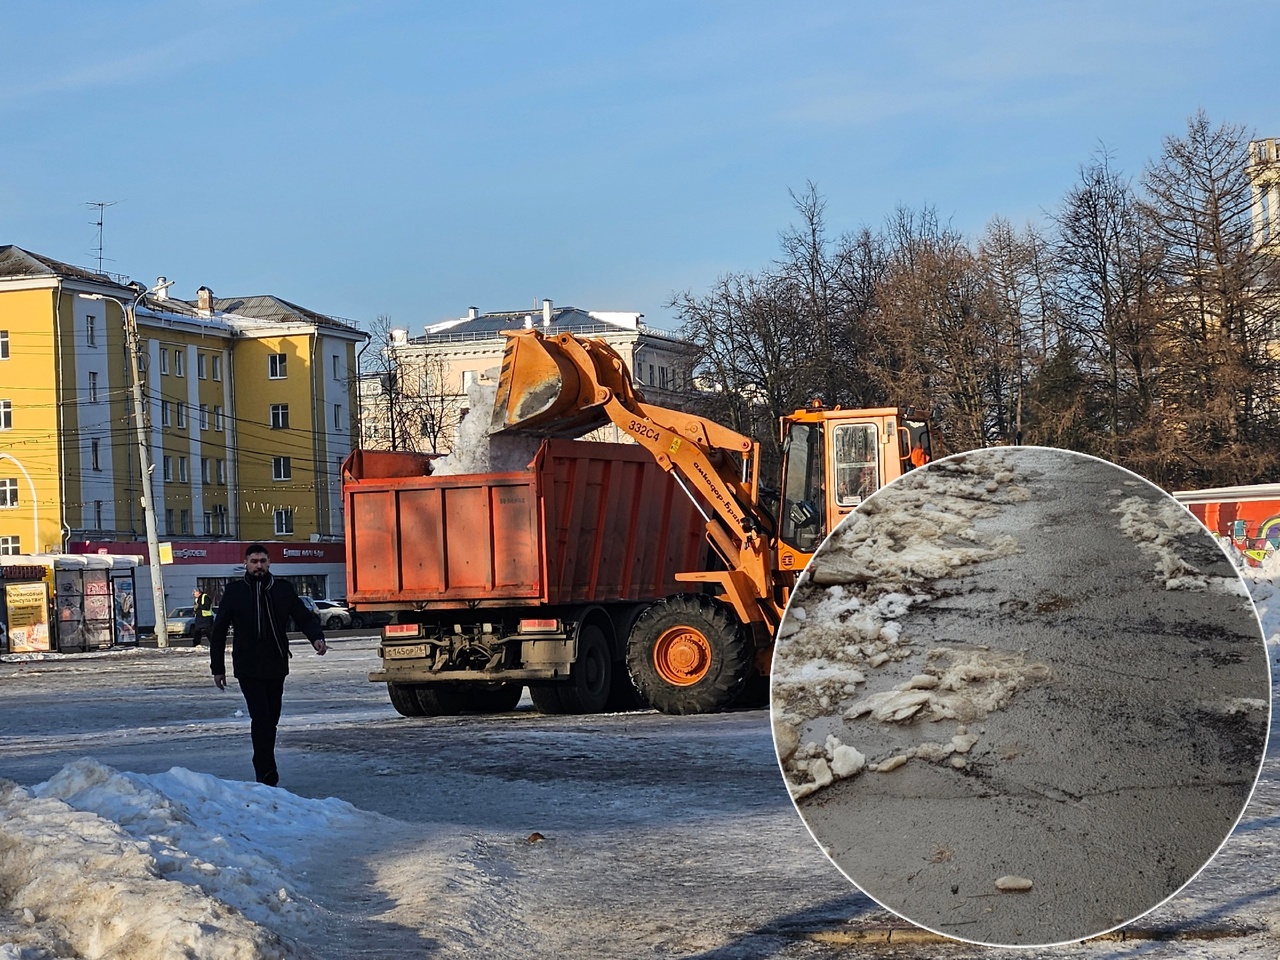 "Варварски почищена": жители Рыбинска жалуются на испорченный снегоуборочной машиной асфальт